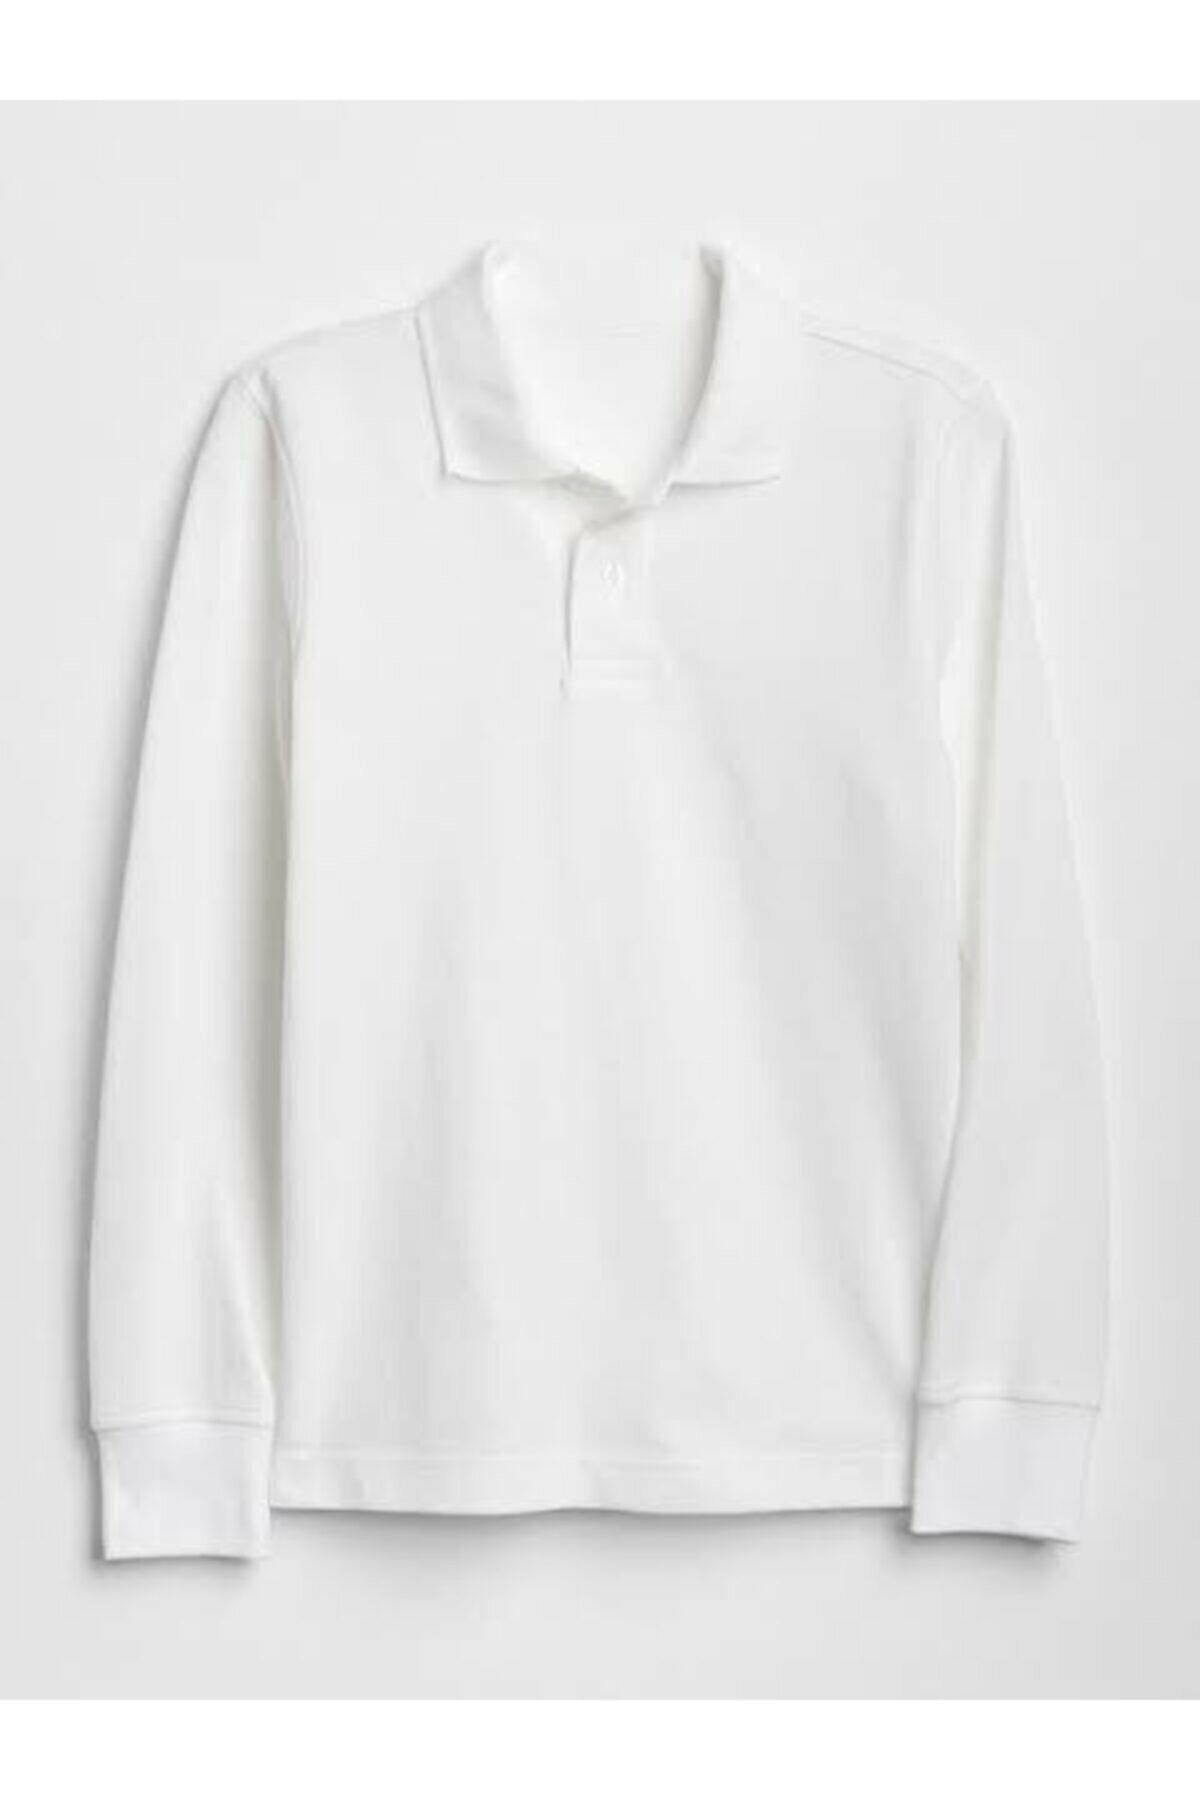 Nacar Unısex Beyaz Uzun Kol Lakost Polo Yaka T-shirt